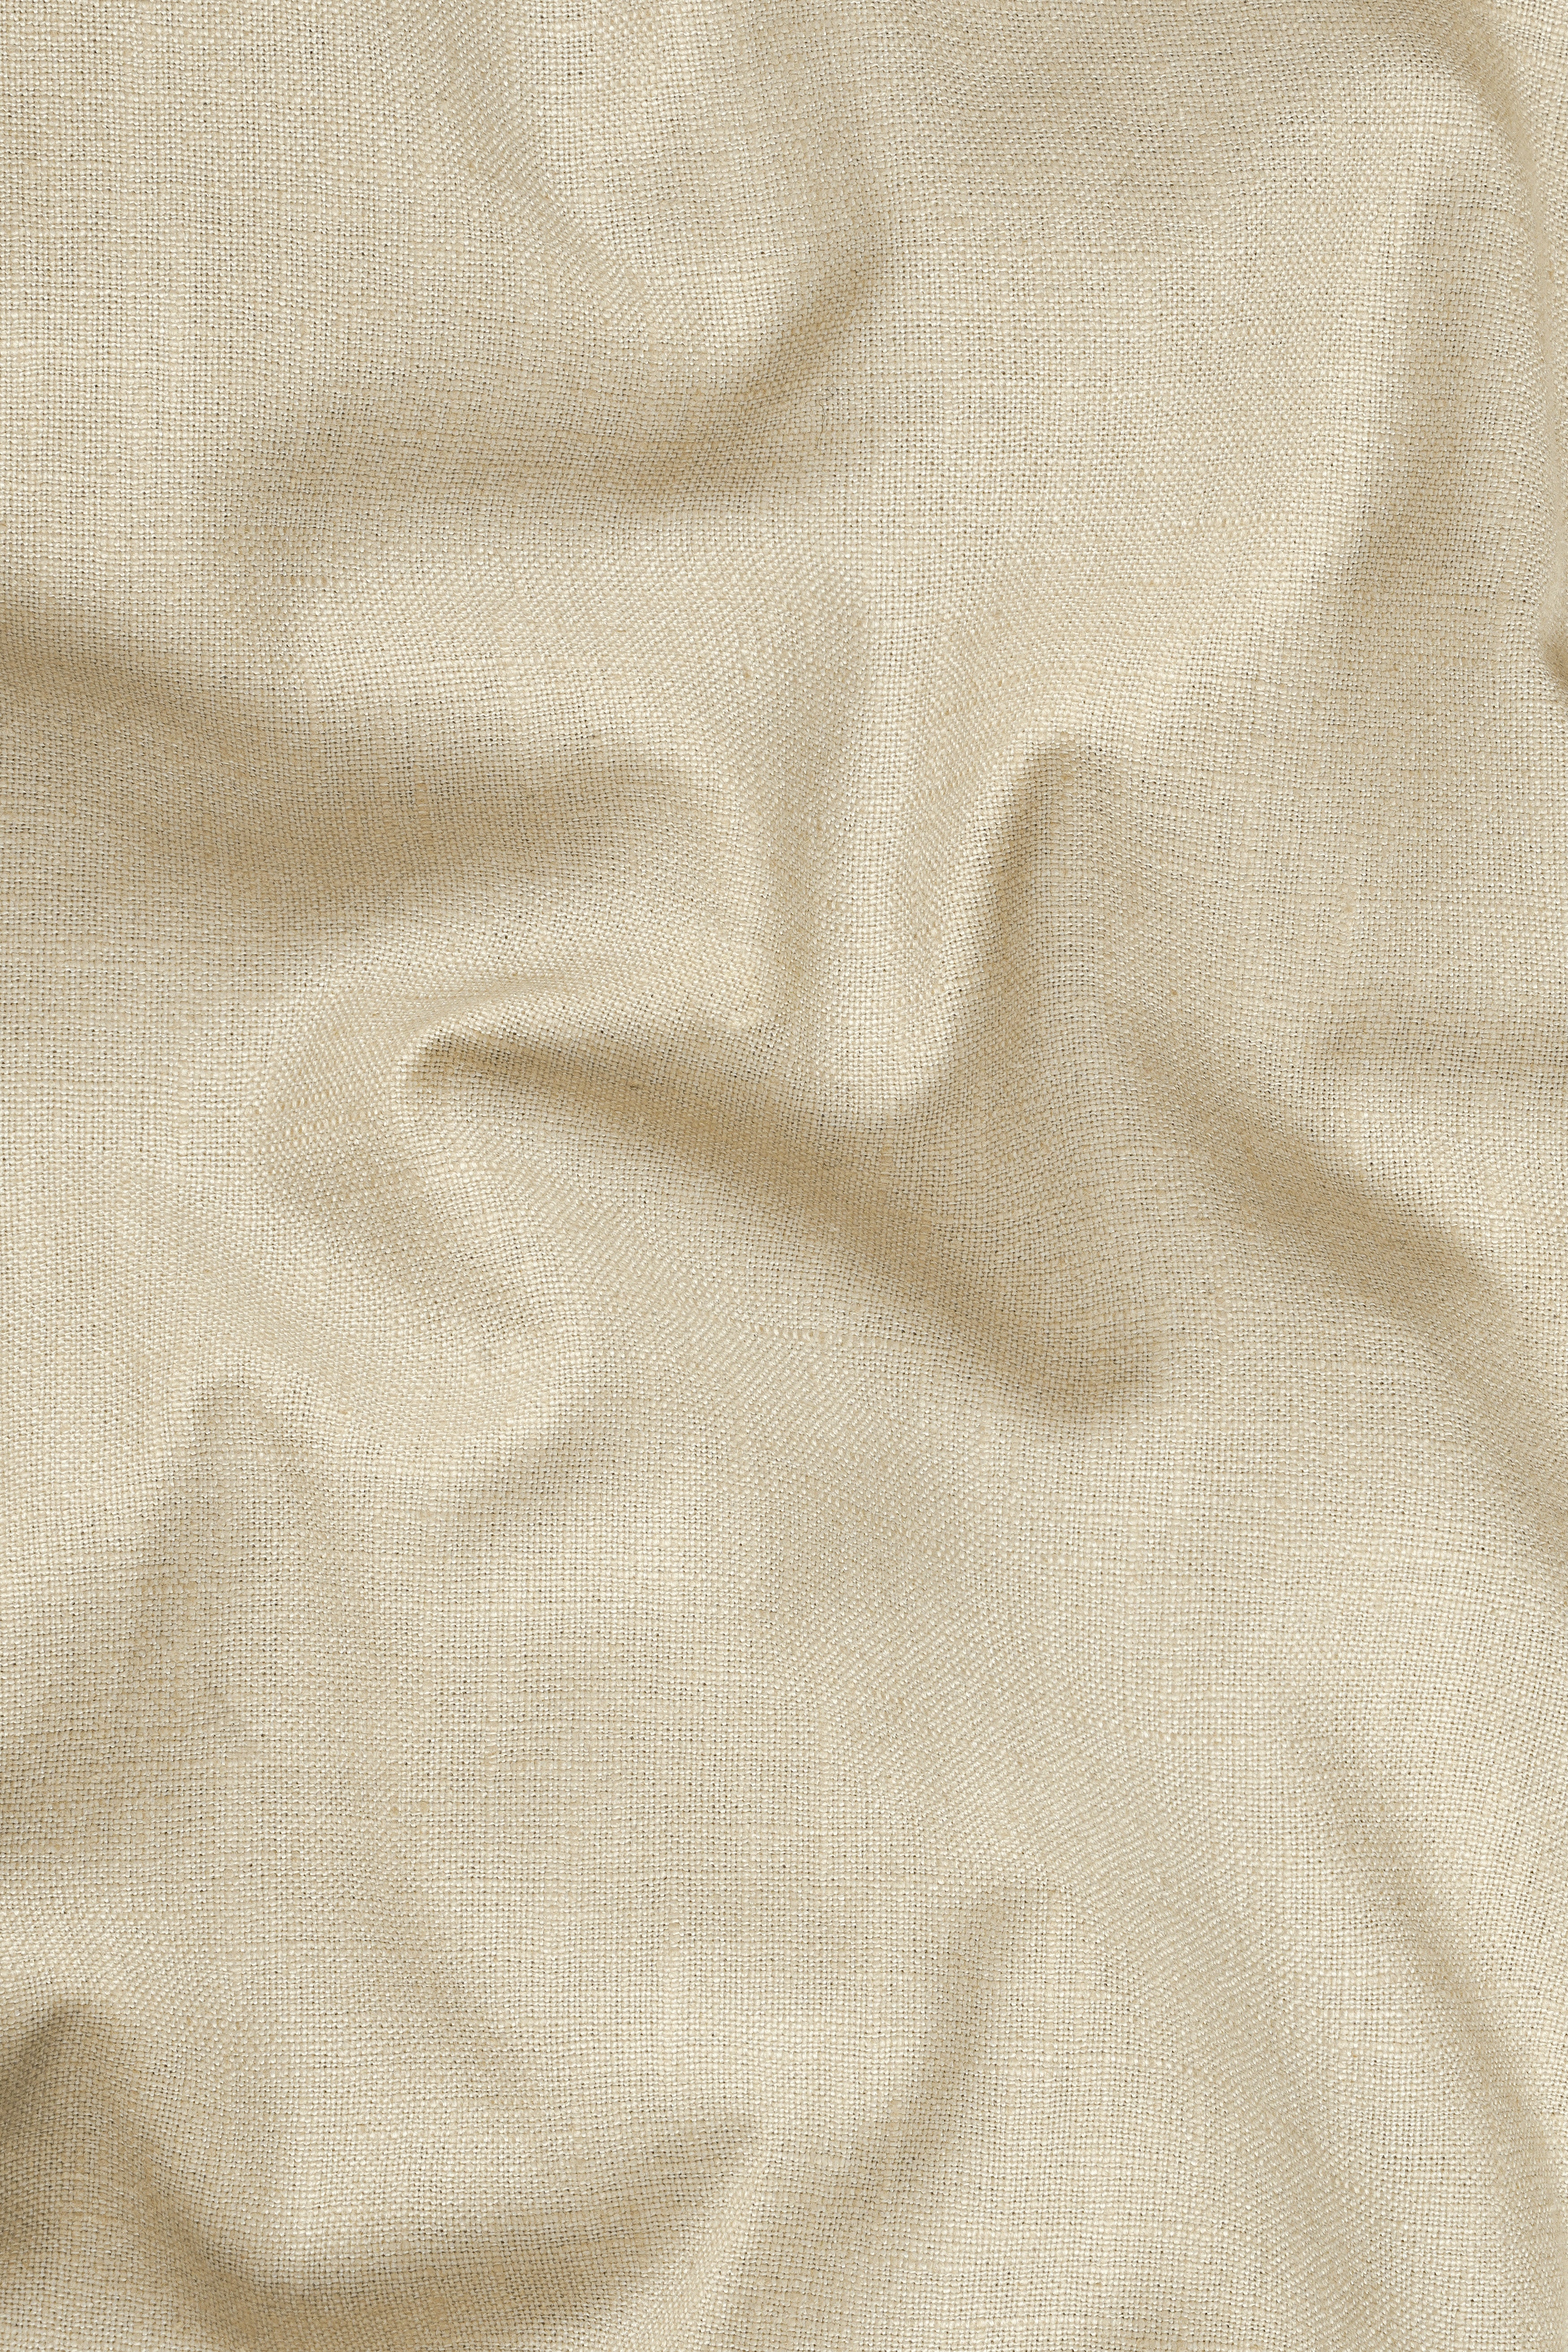 Cashmere Beige Premium Cotton Pant T3045-28, T3045-30, T3045-32, T3045-34, T3045-36, T3045-38, T3045-40, T3045-42, T3045-44